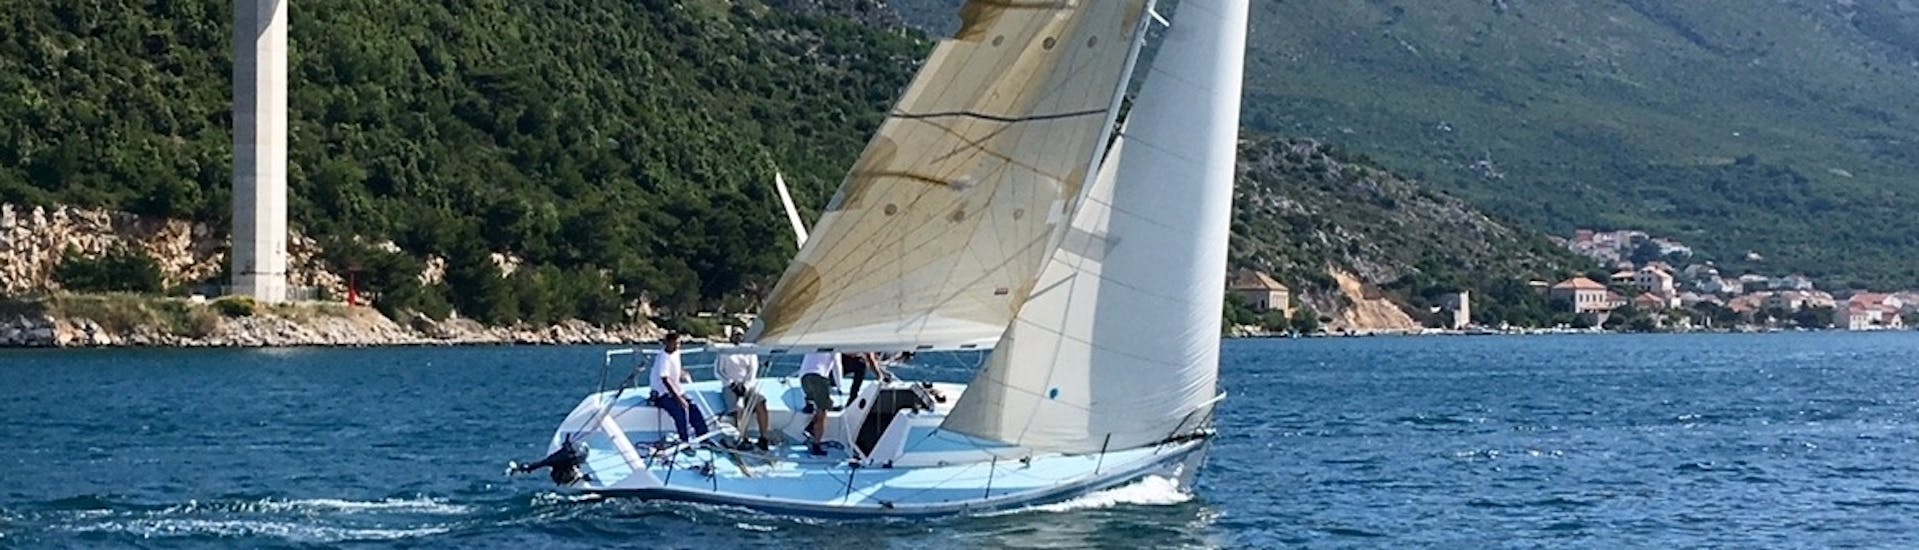 Unser Segelboot im Wasser während einer privaten Bootsfahrt um die Elaphiten-Inseln ab Dubrovnik mit The Day Sail Croatia.